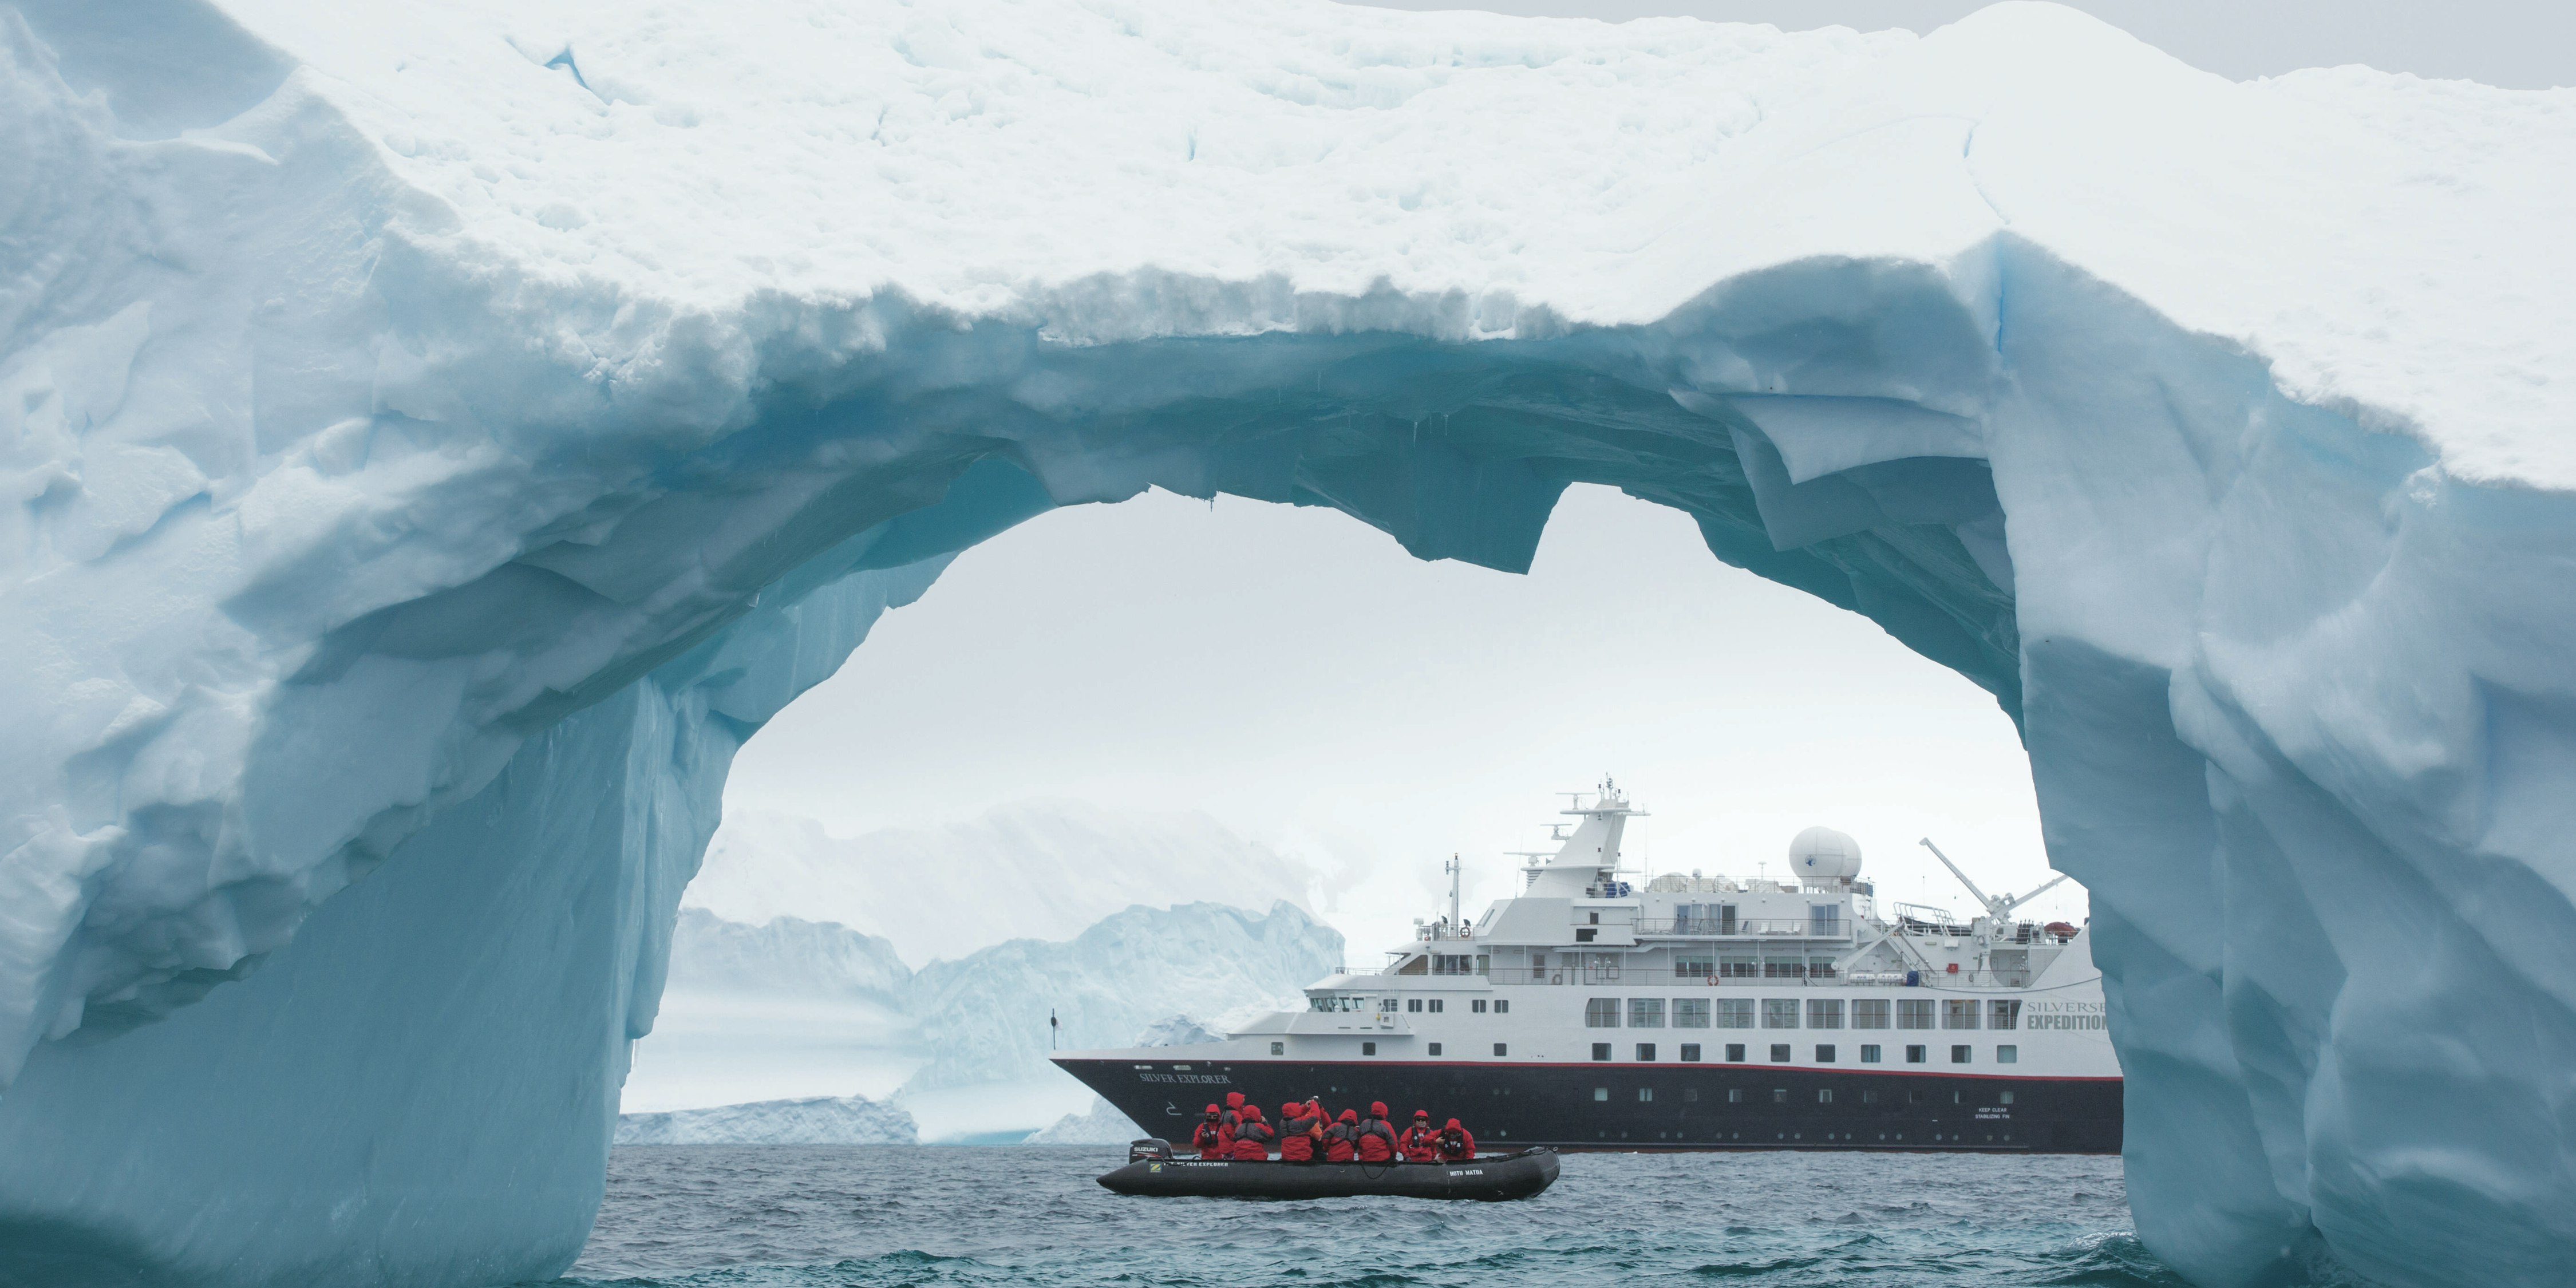 luxury cruises to antarctica